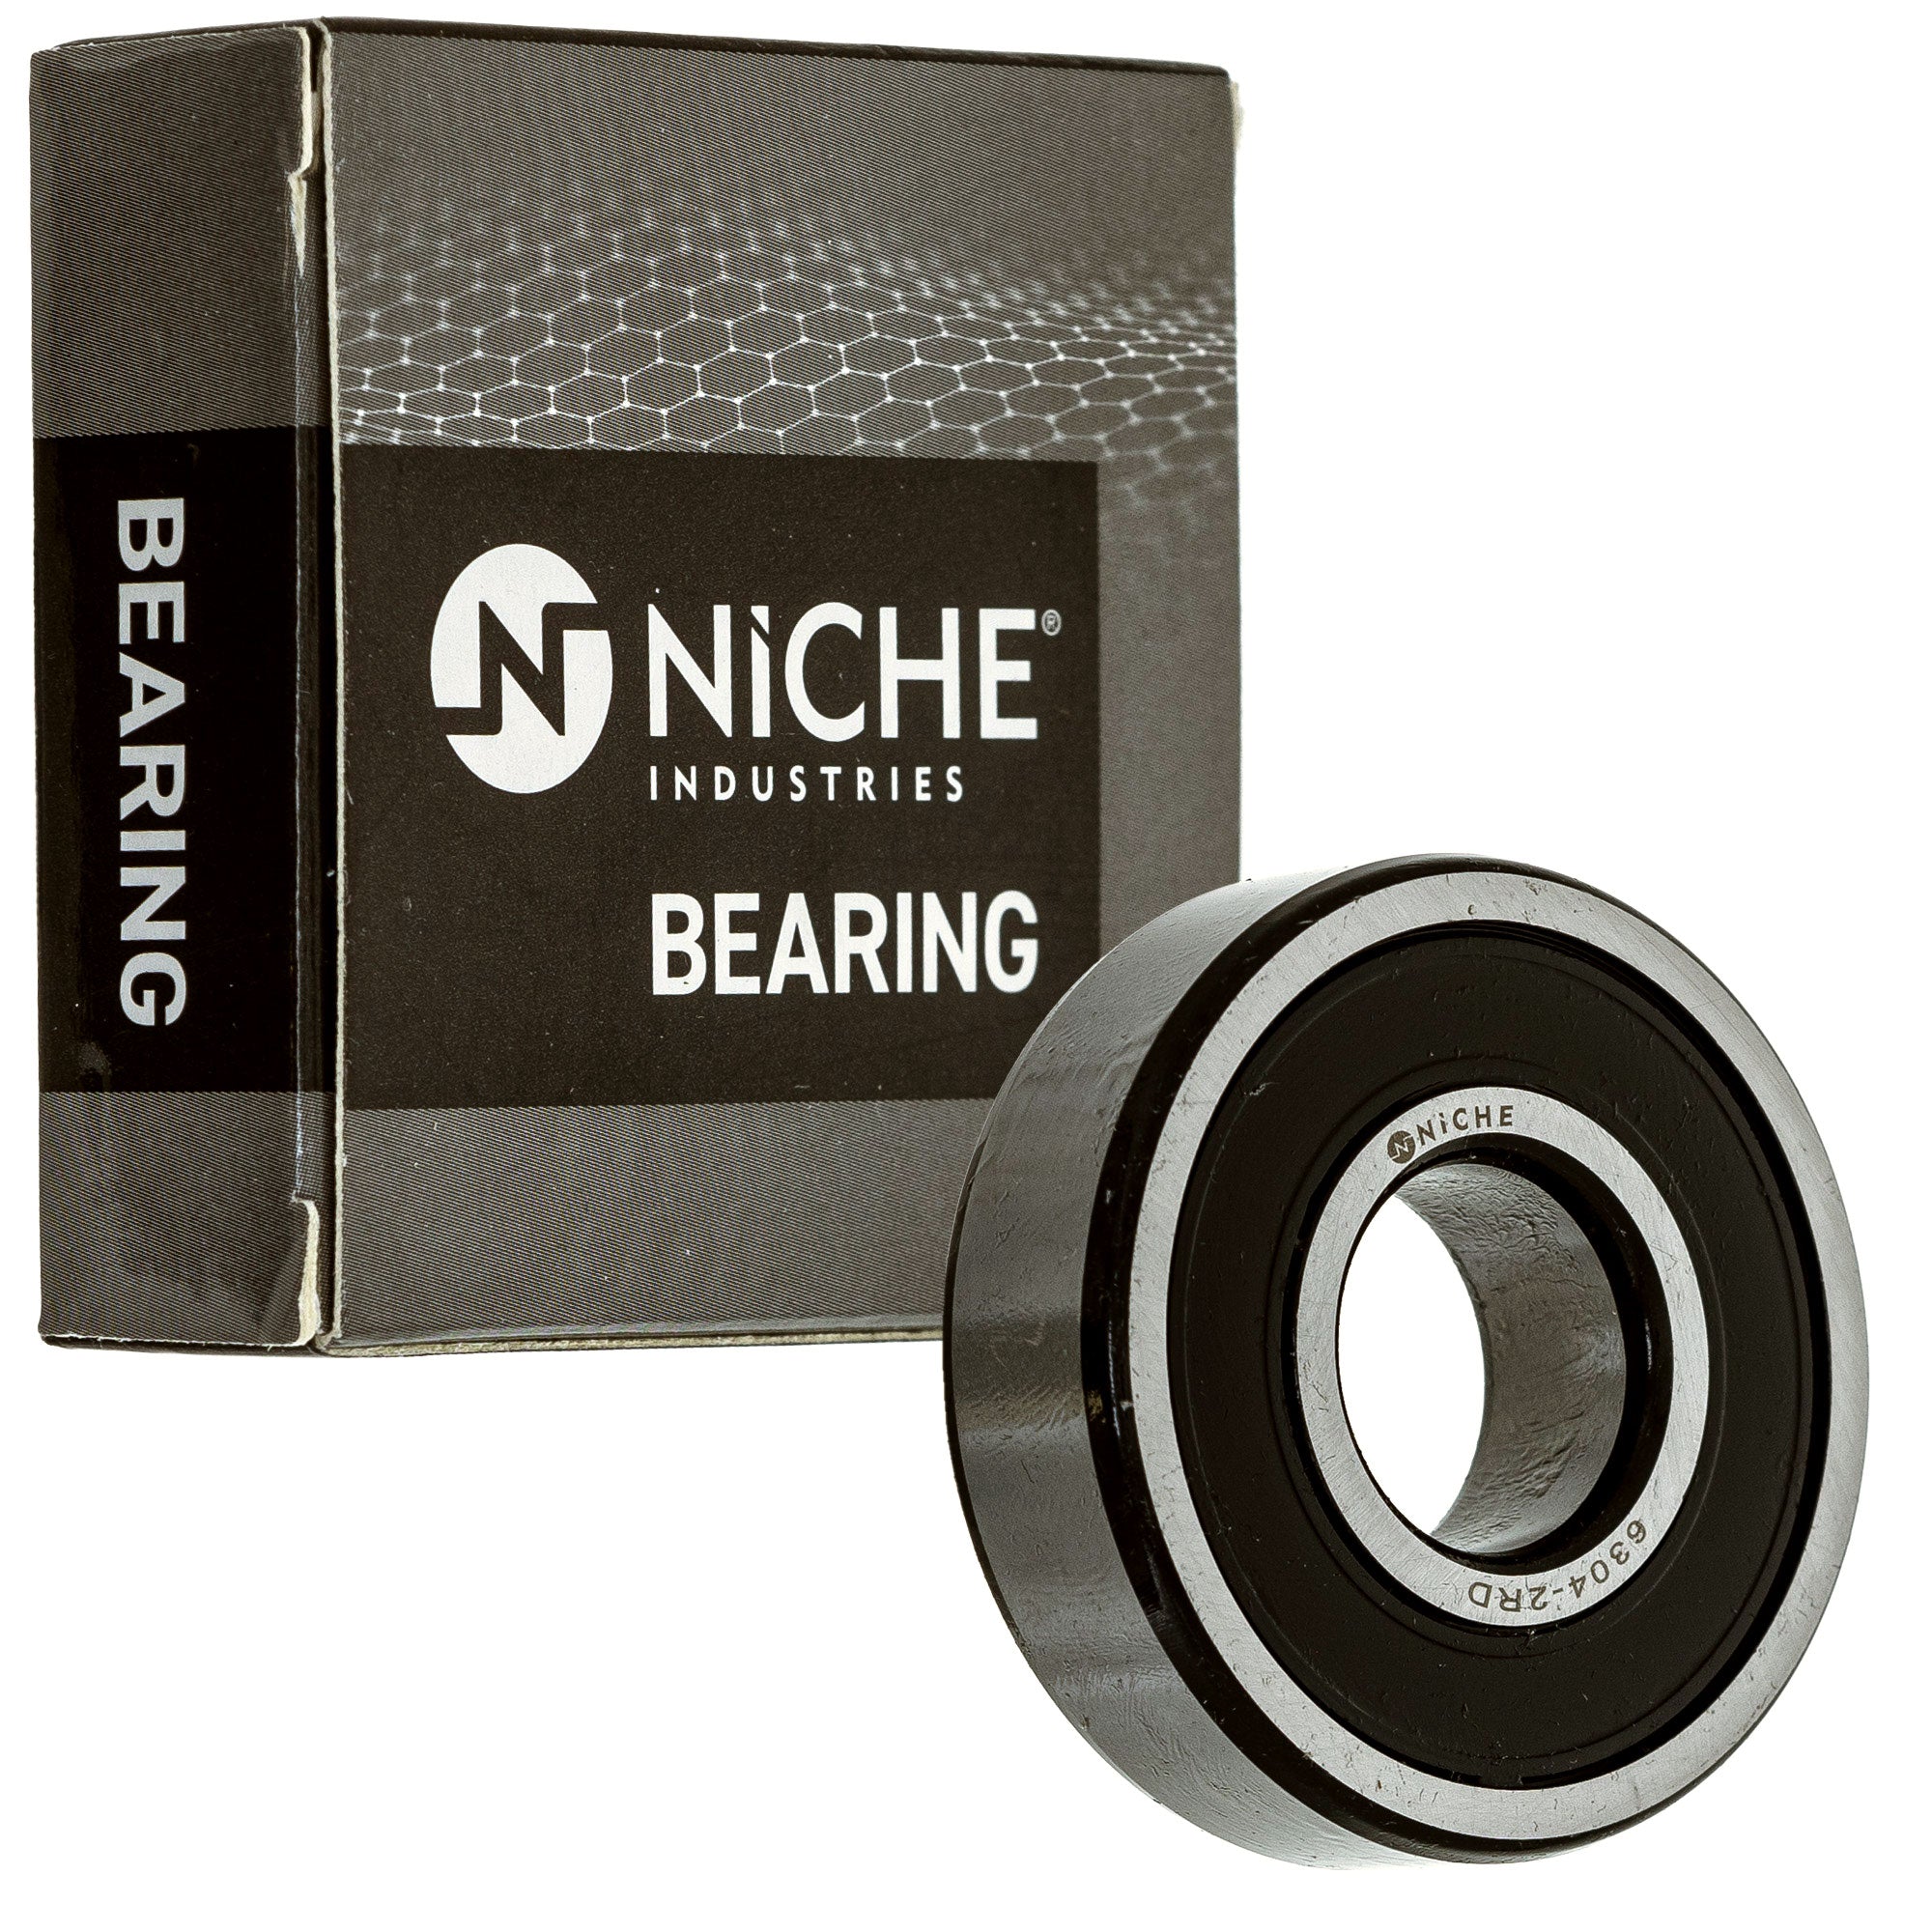 NICHE 519-CBB2207R Bearing 2-Pack for zOTHER XR80R XR80 XR75 XR70R